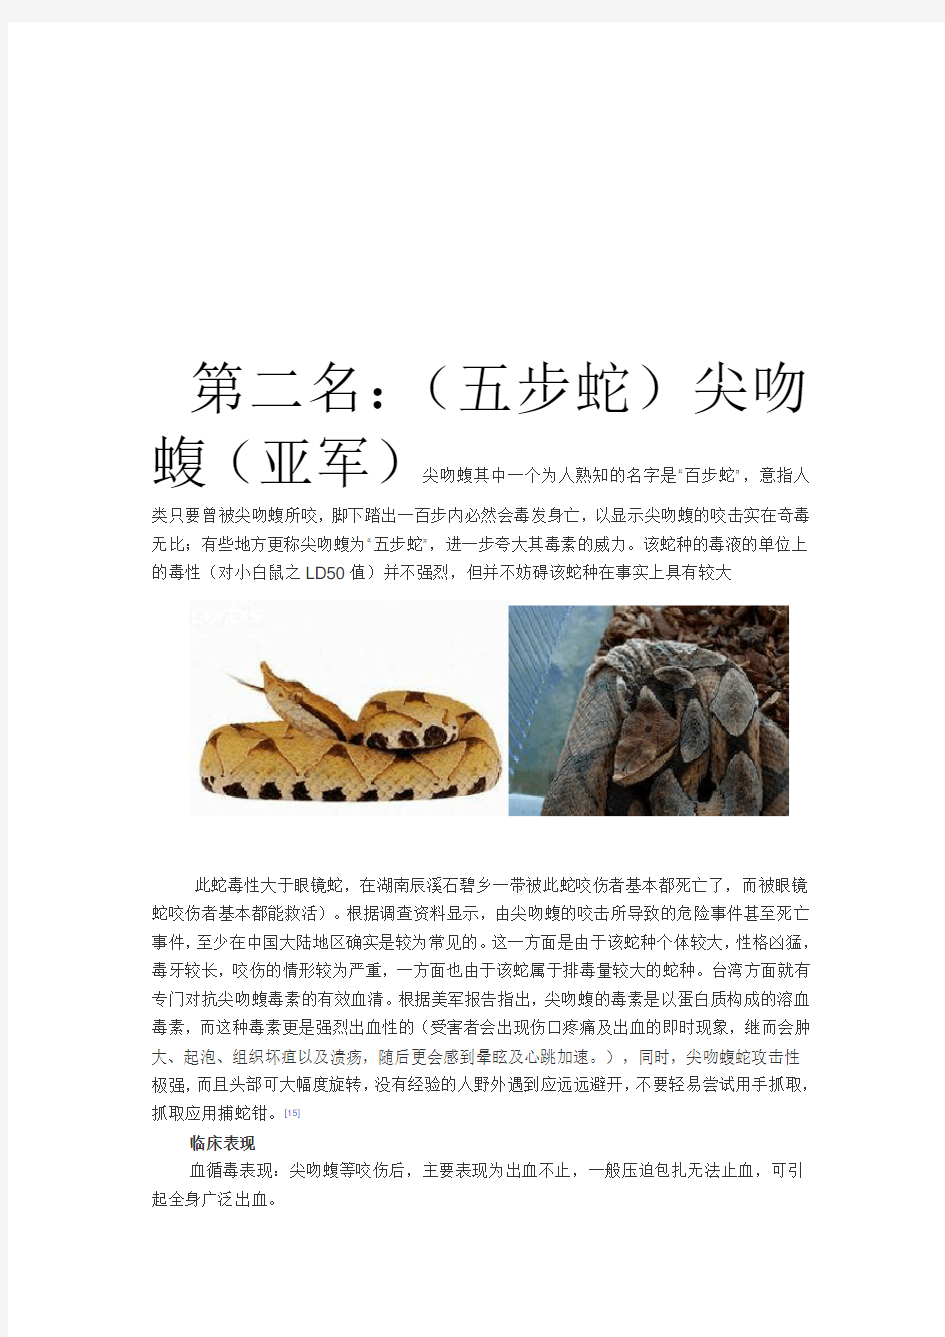 中国十大毒蛇排名